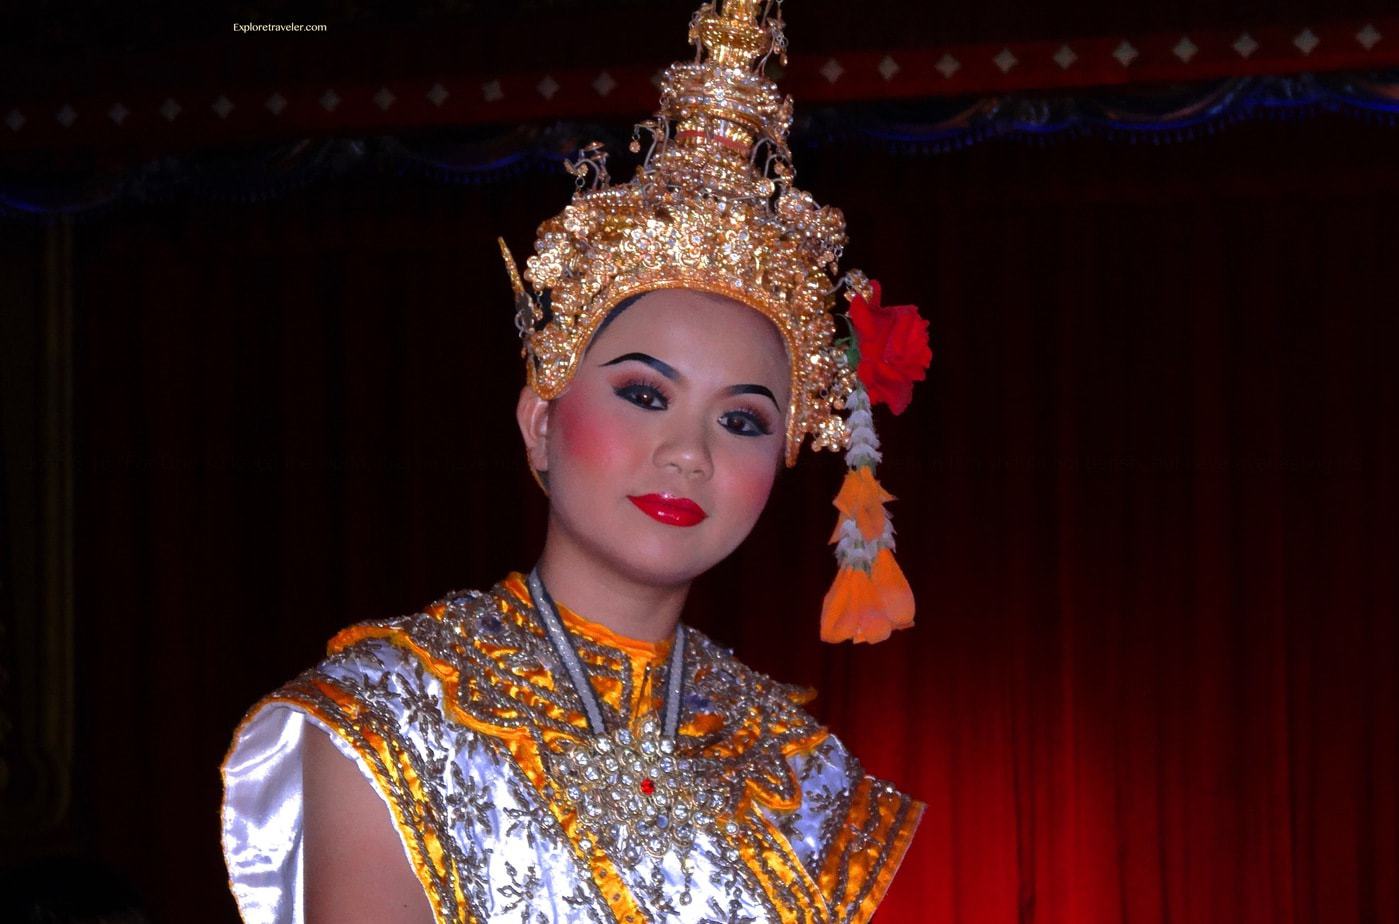 يعود تاريخ الرقص التايلاندي التقليدي إلى العصور السيامية القديمة.